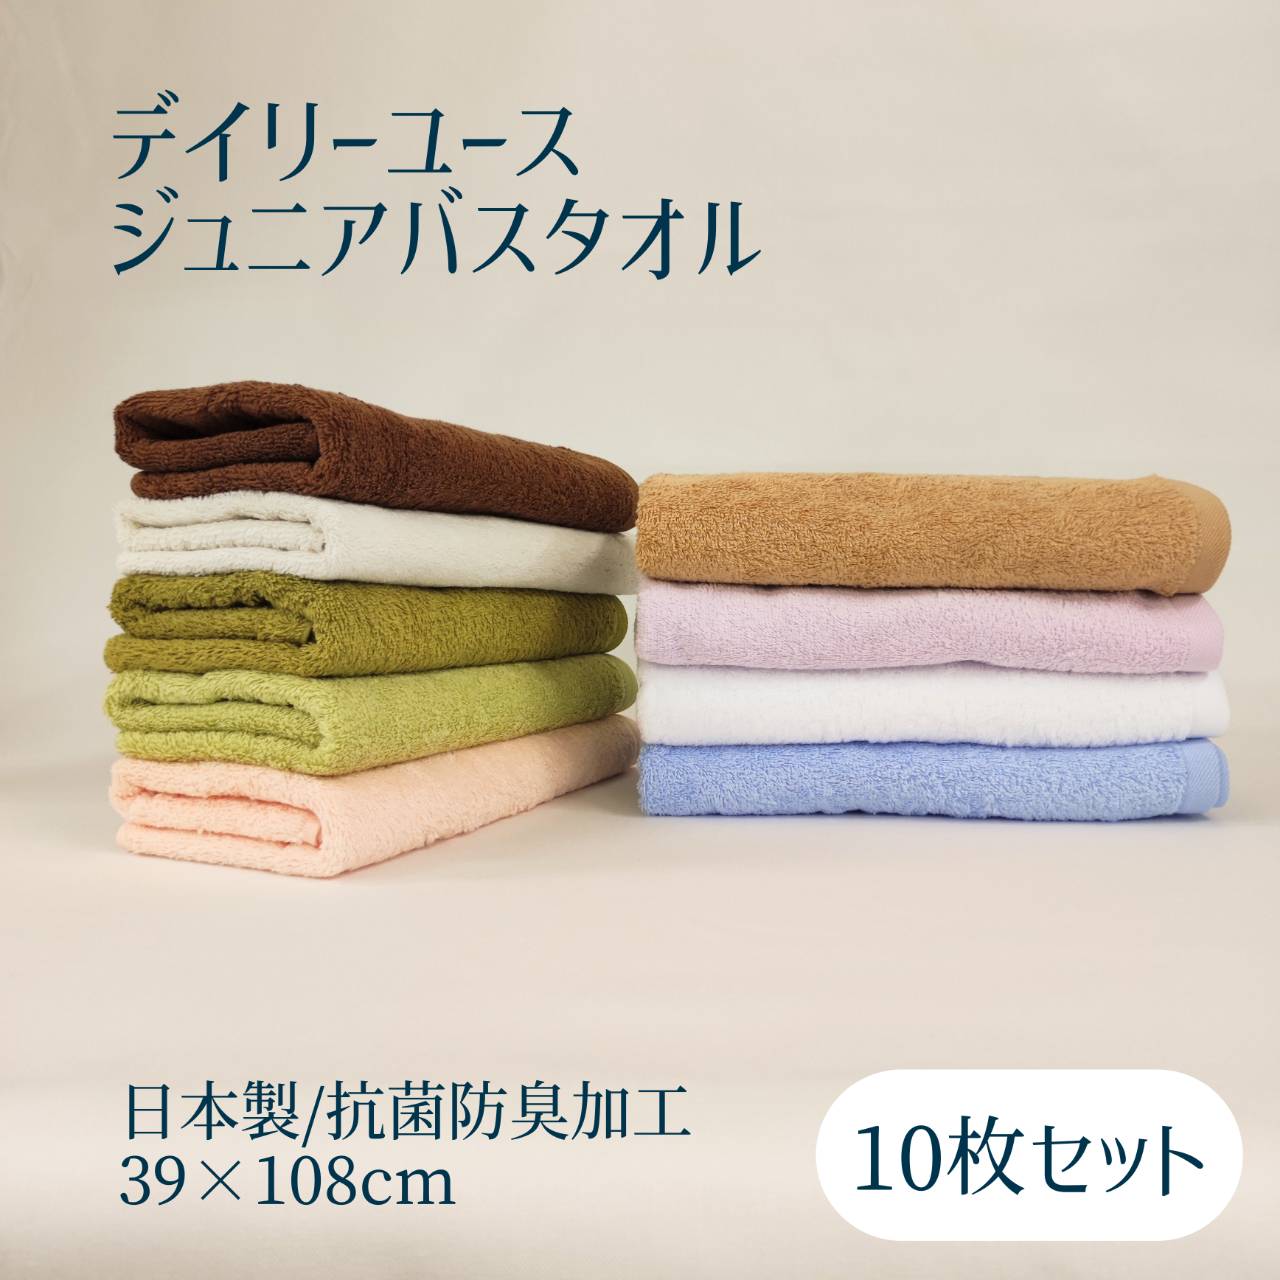 日本製 デイリーユース ジュニアバスタオル 10枚セット / 約39×108cm タオル 小さめ バスタオル 部屋干し用 吸水 まとめ買い 送料無料